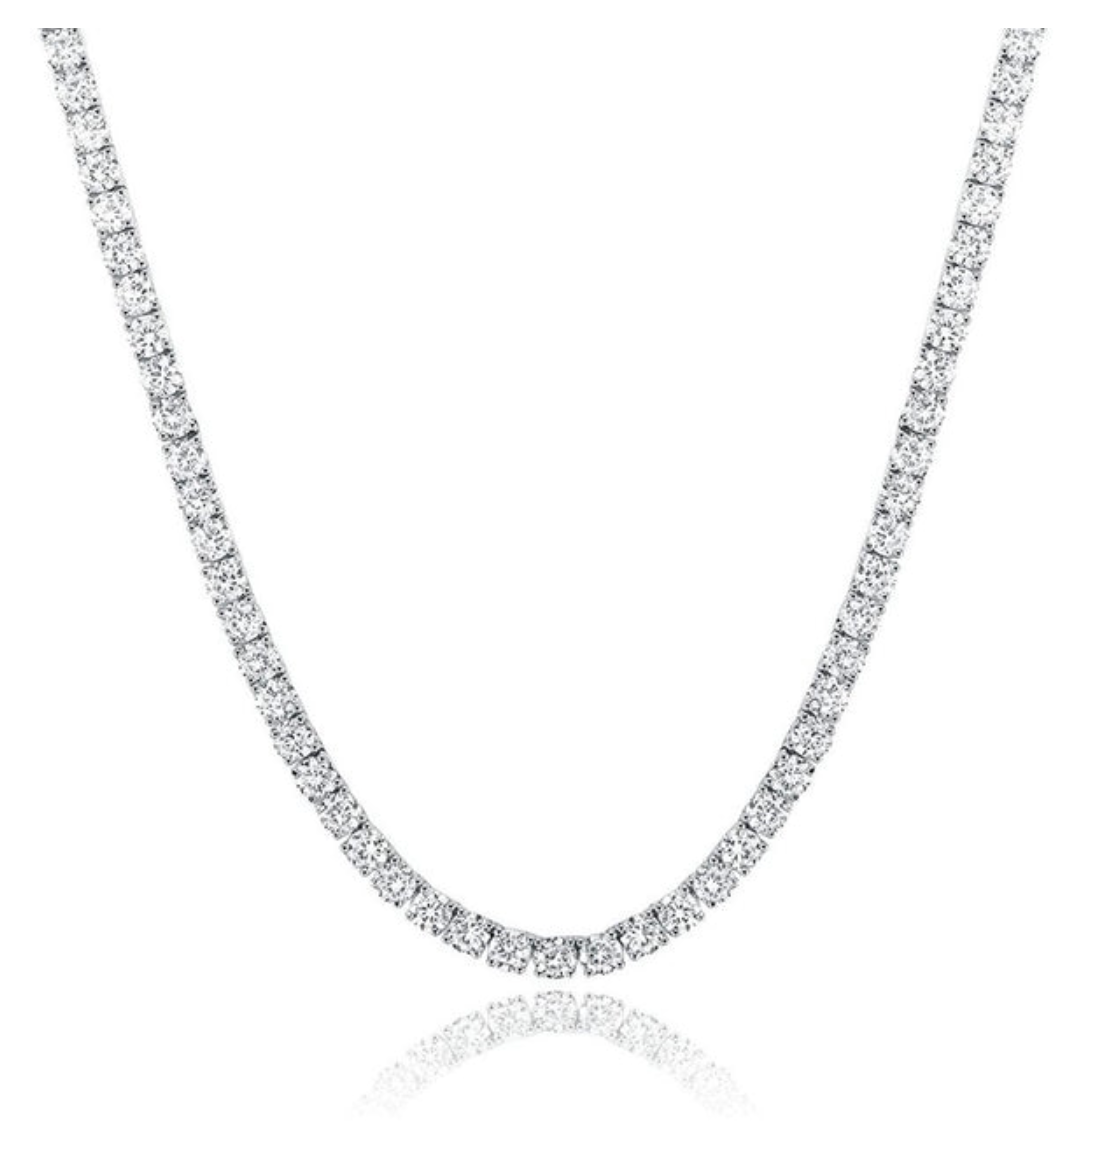 10.56 carat lab grown tennis necklace, 14k gold, E-F color, VVS-VS clarity